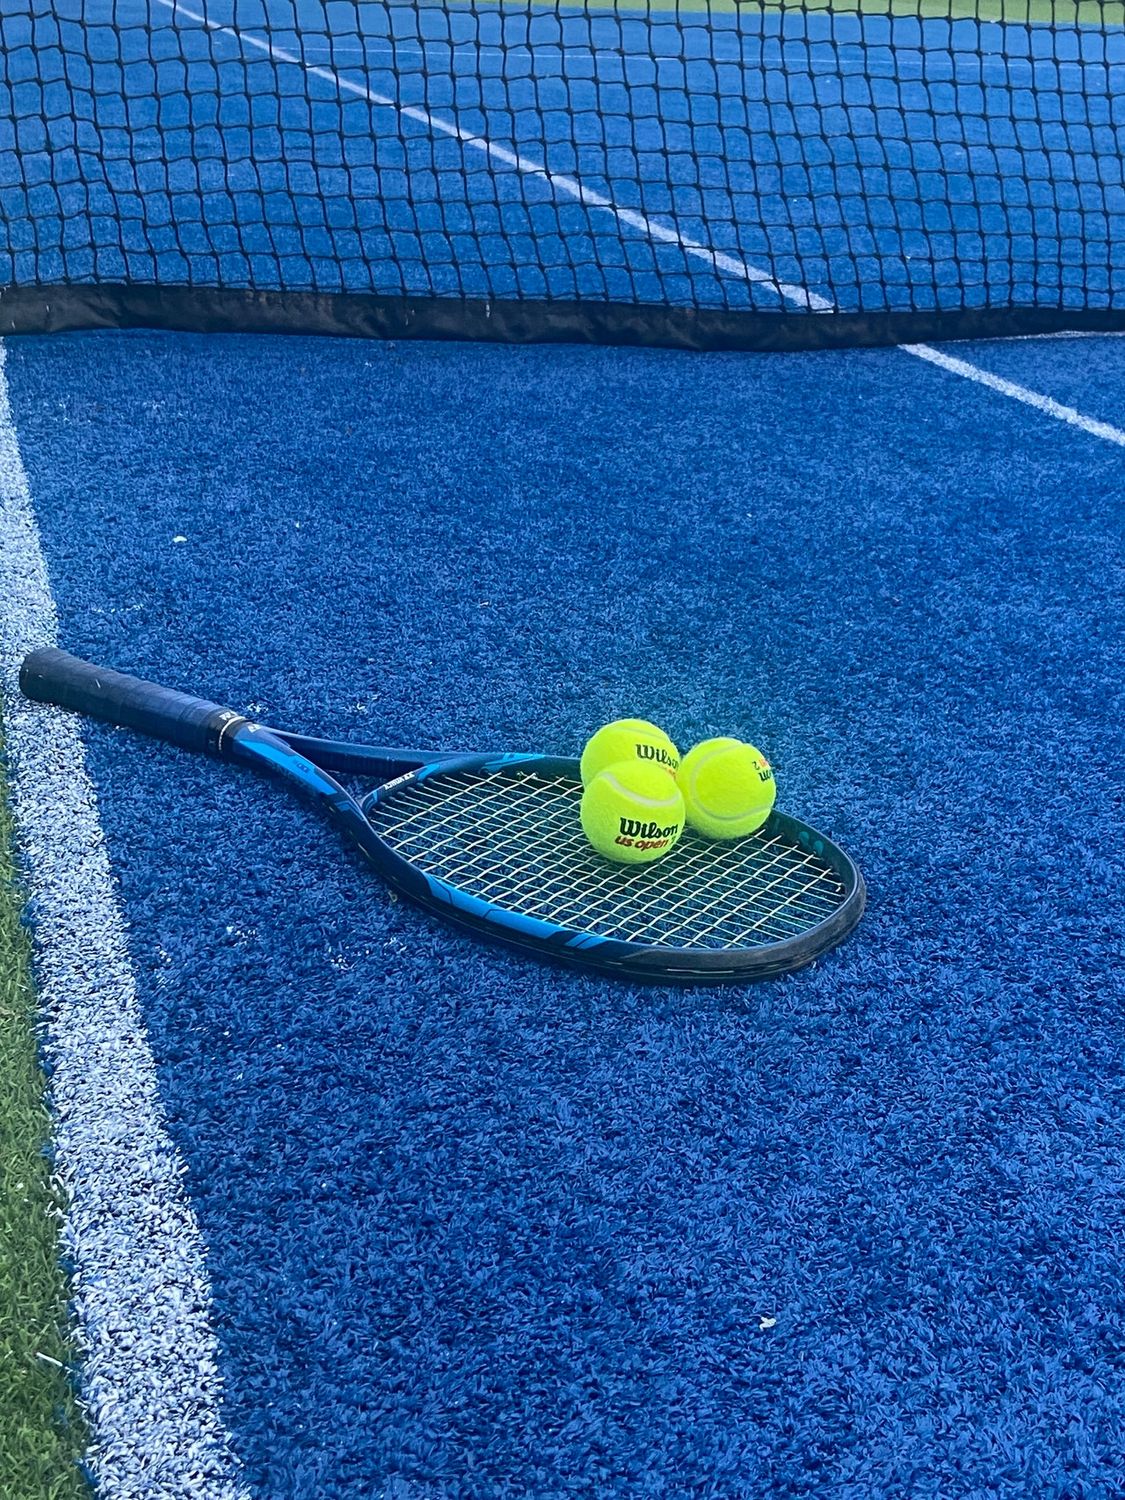 Echipamentul potrivit pentru tenis și cum te ajută acesta